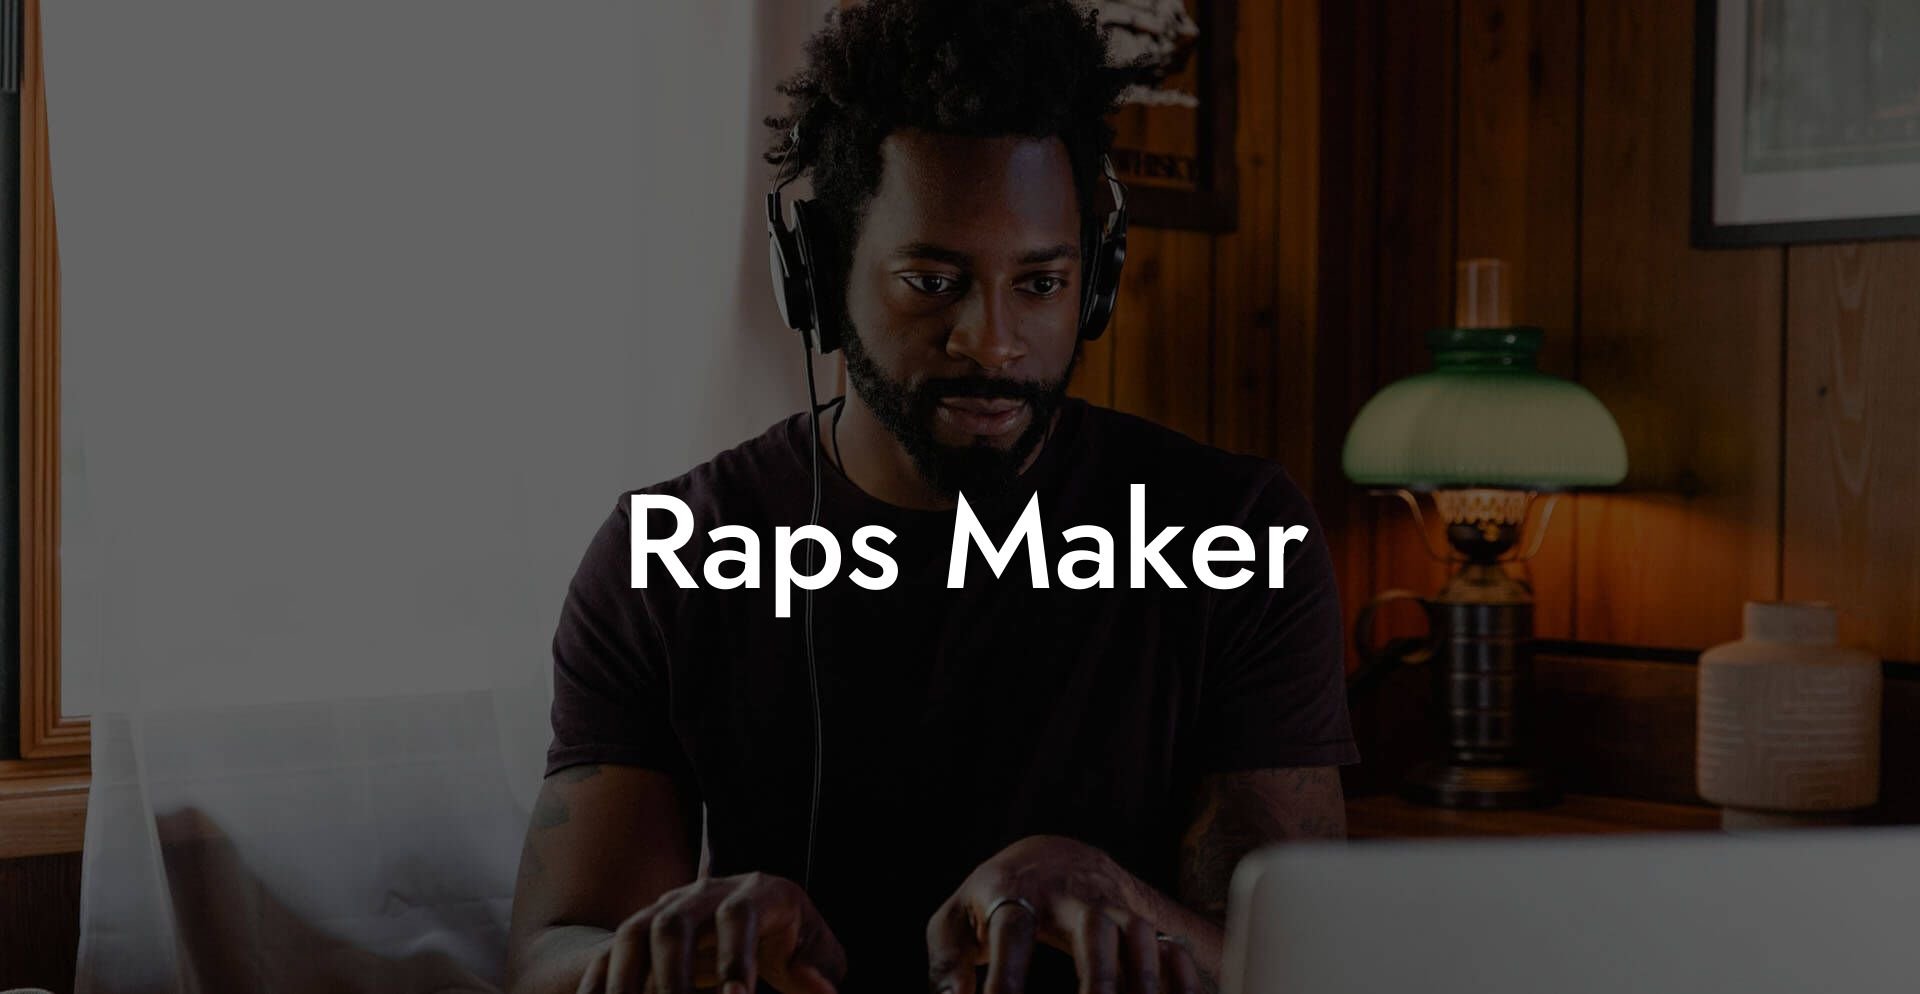 raps maker lyric assistant